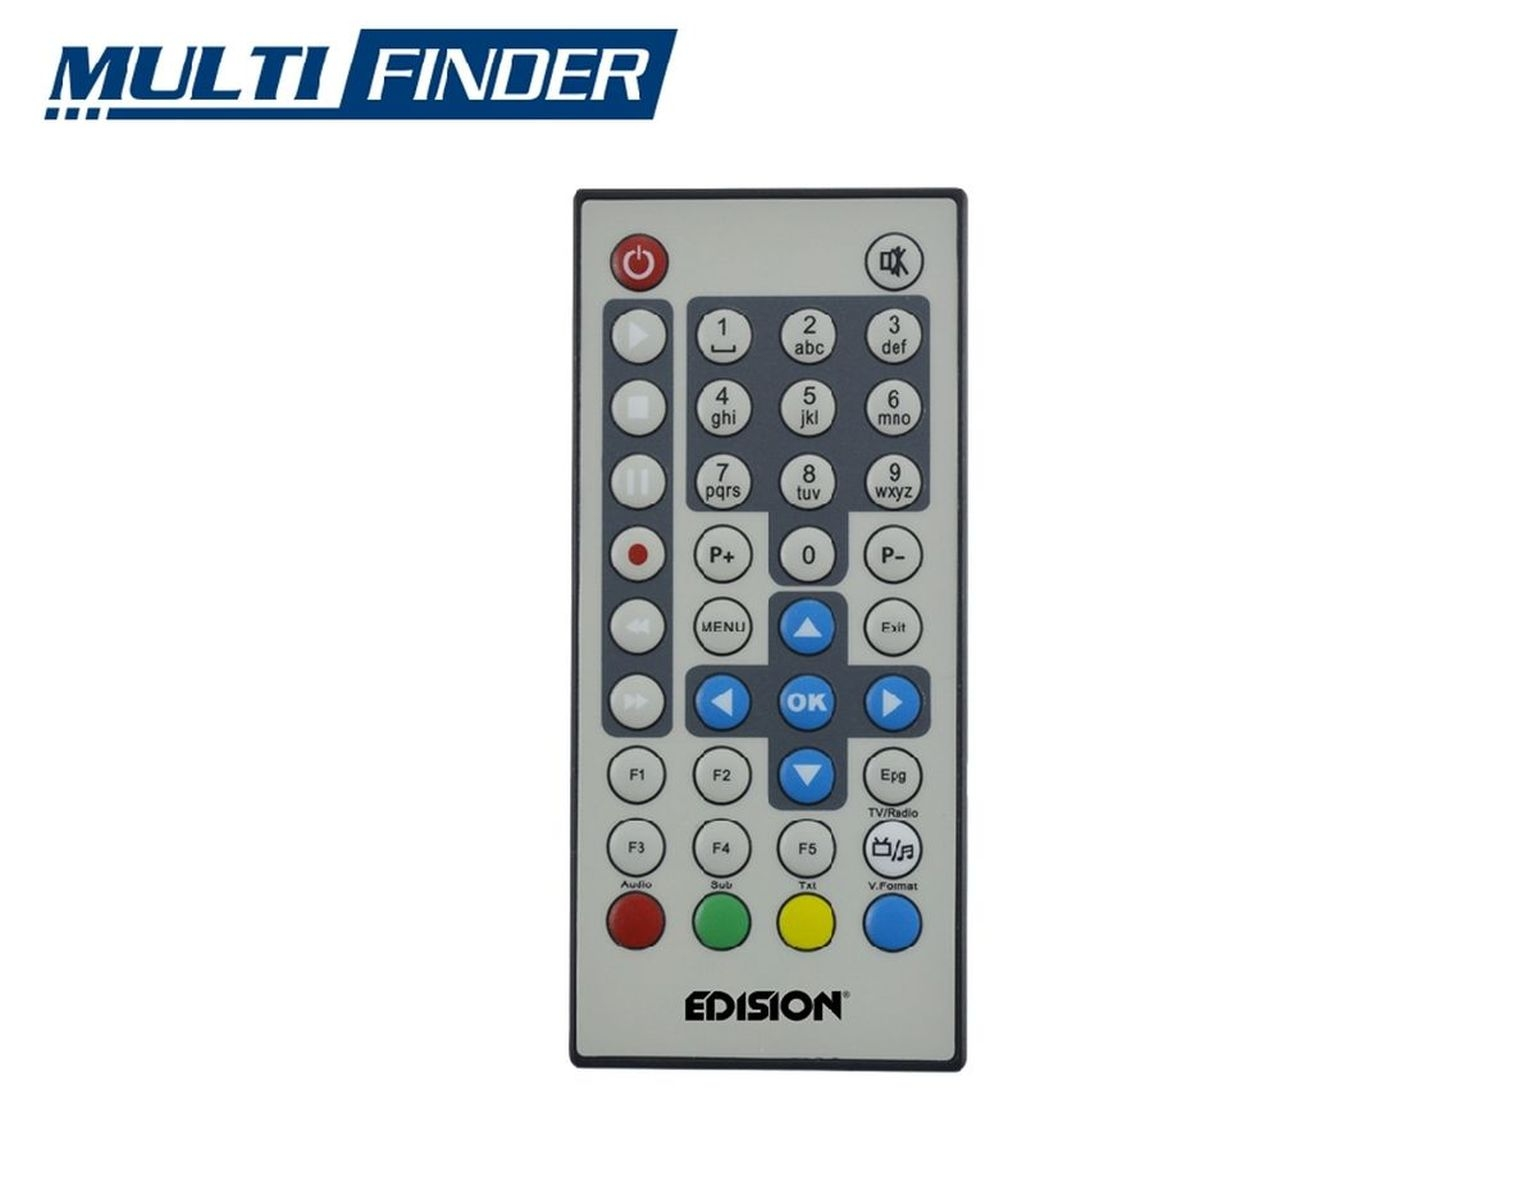 HDTV alle DVB- für tauglich EDISION Multifinder Multi-Finder, DVB-Typen